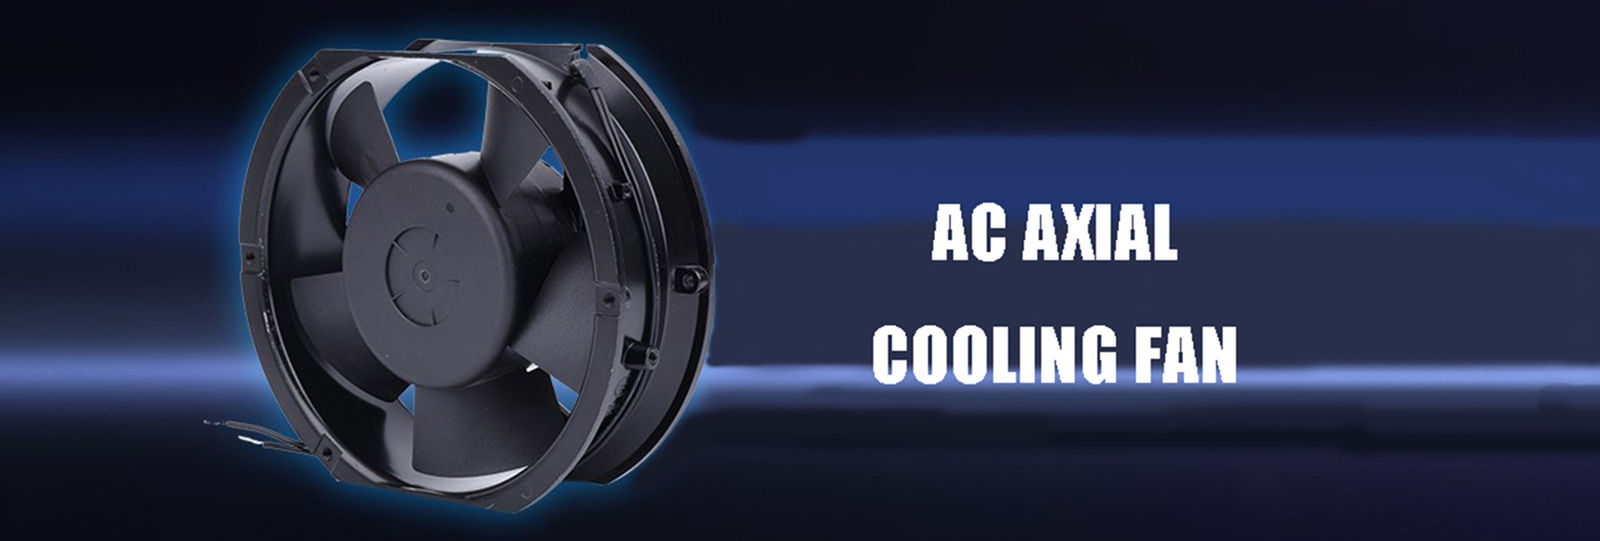 AC Axial พัดลมระบายความร้อน